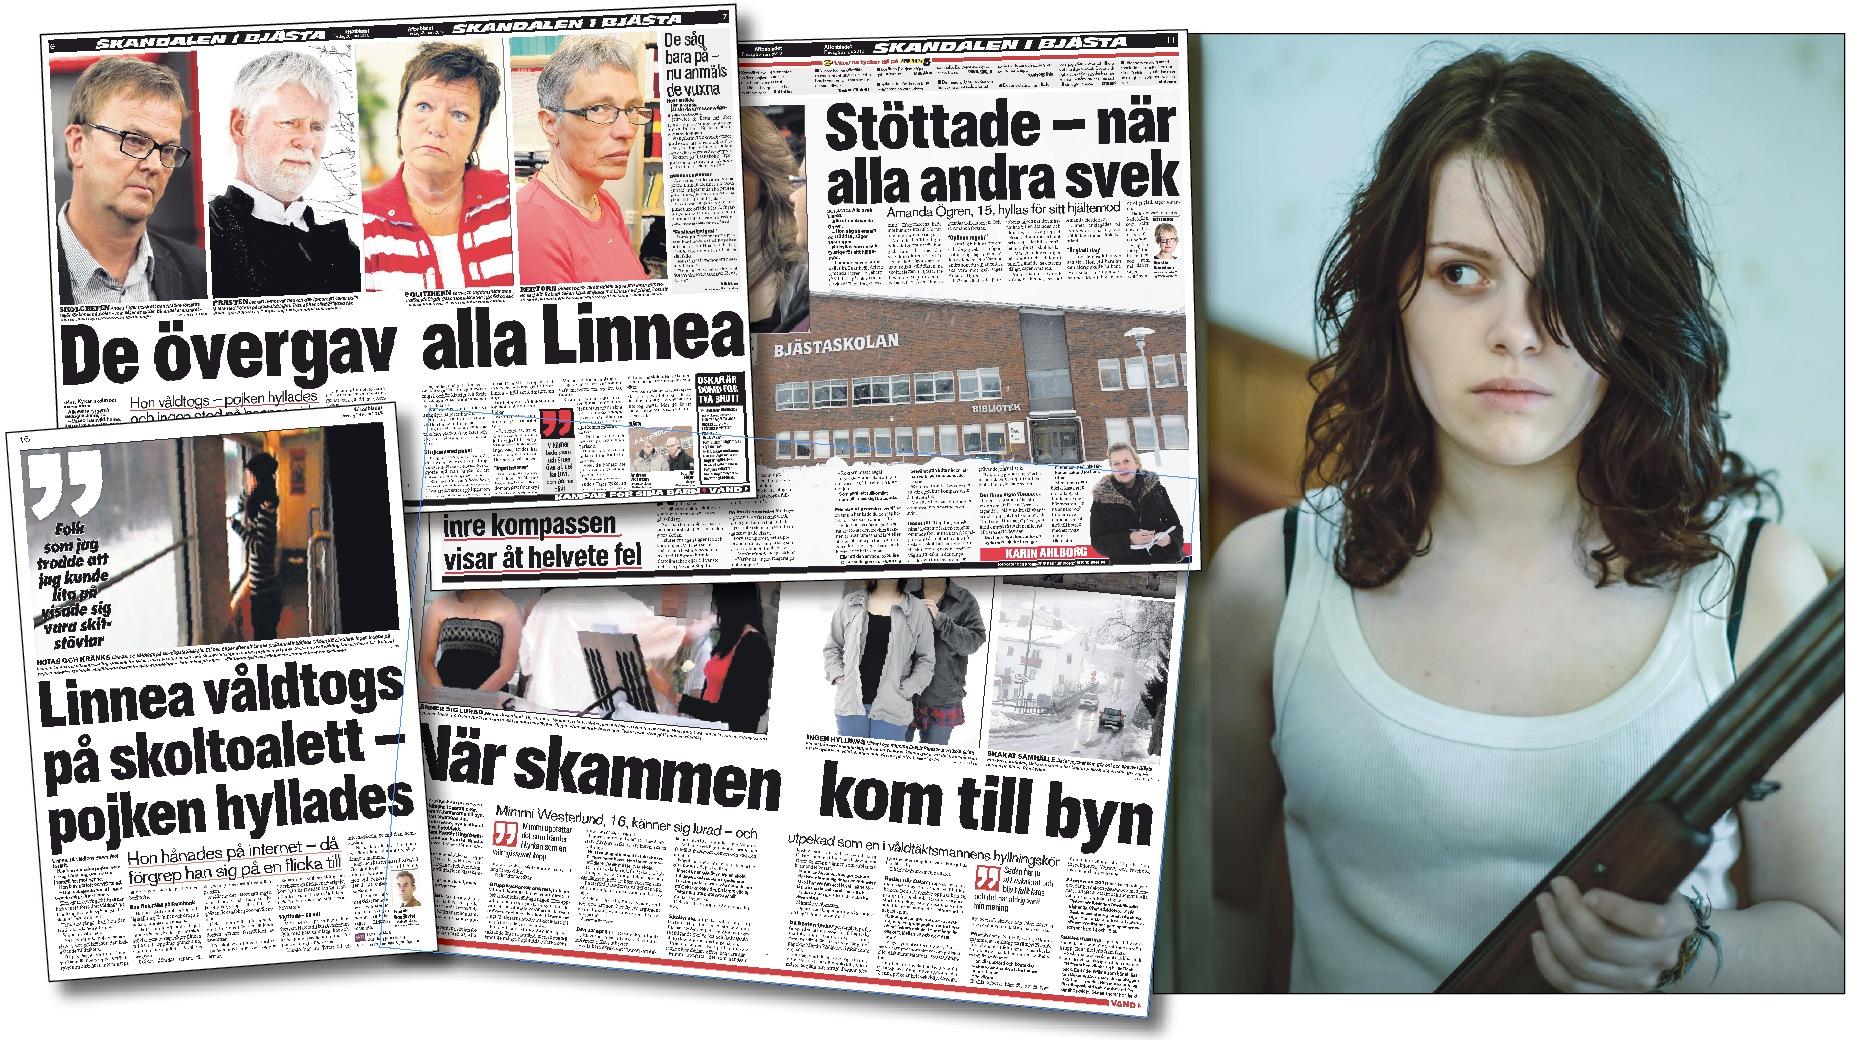 Aftonbladets bevakning av Bjästafallet i mars 2010. Till höger en bild ur filmen "Flocken" som är inspirerad av händelserna i Bjästa.